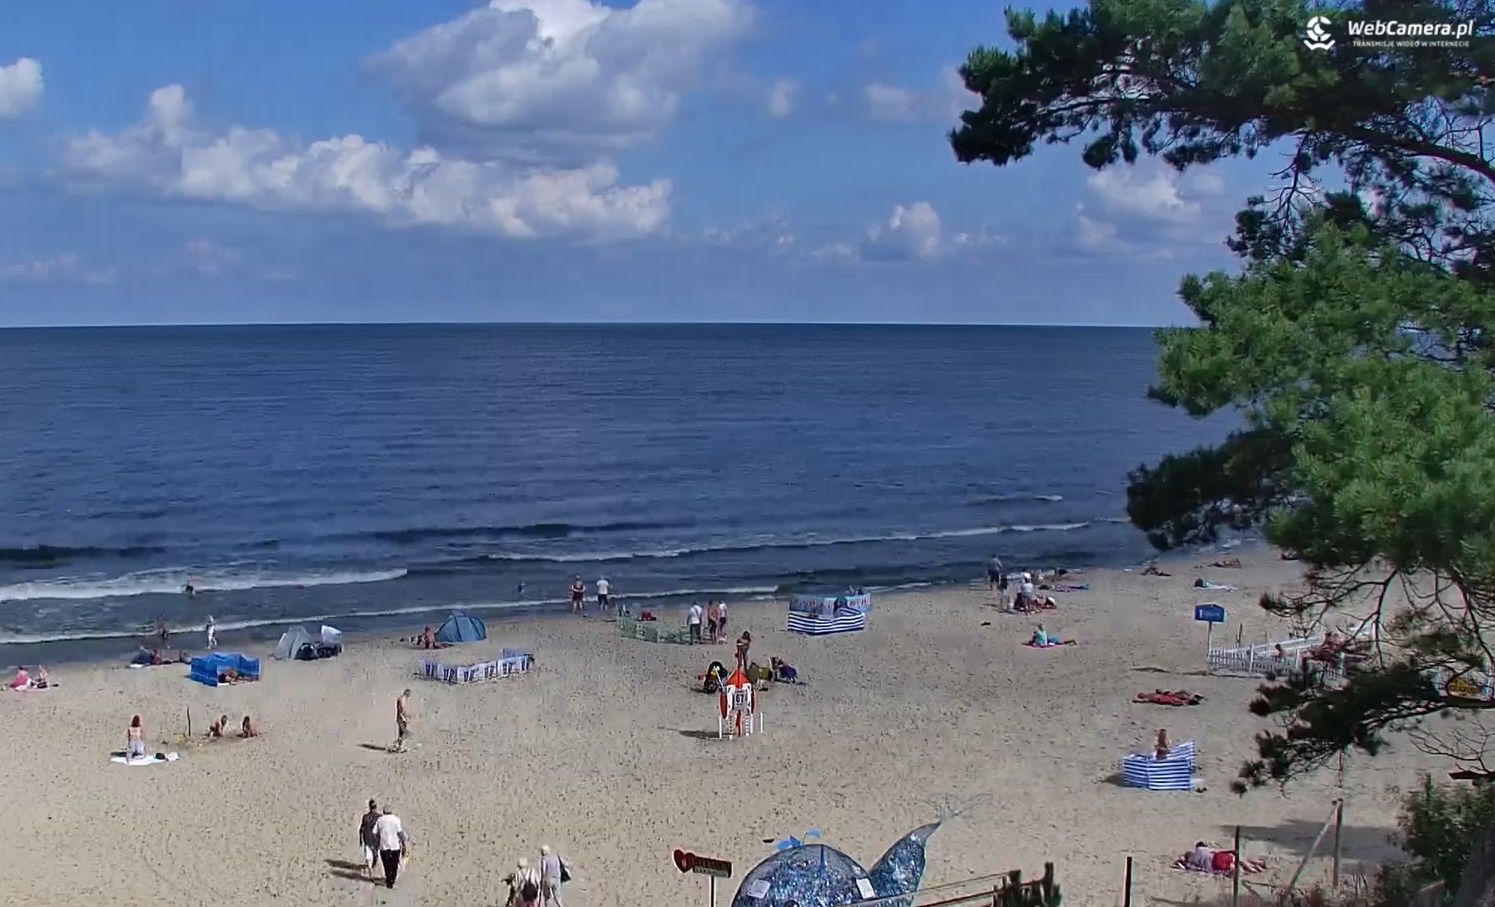 Smutny widok na polskich plażach. To znak, że wakacje się kończą